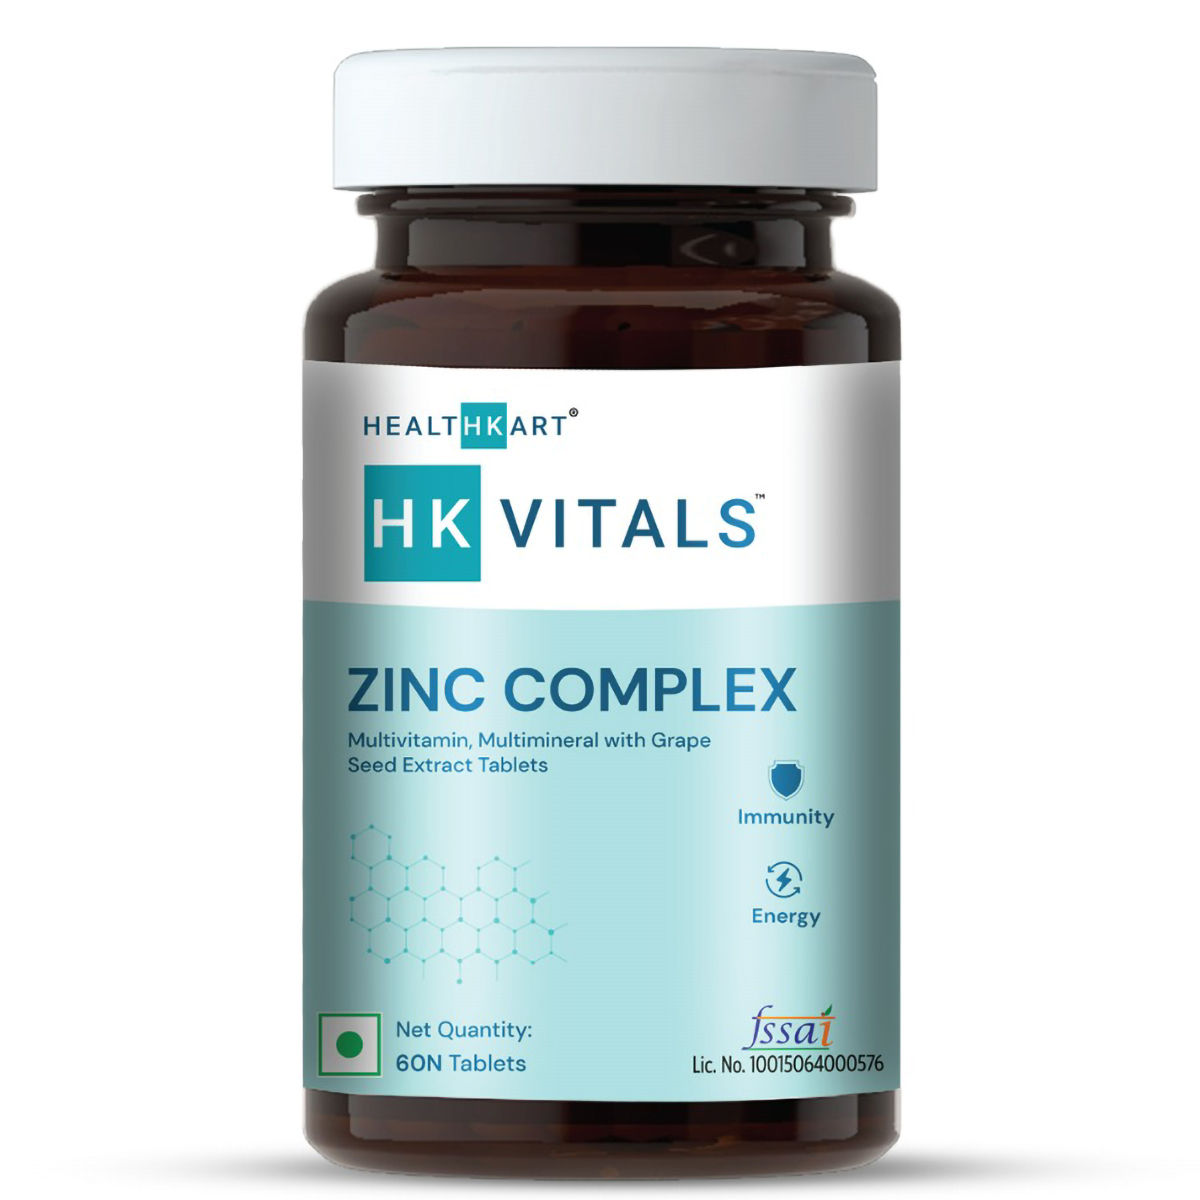 Buy Healthkart HK Vitals Zinc Complex, 60 Tablets Online